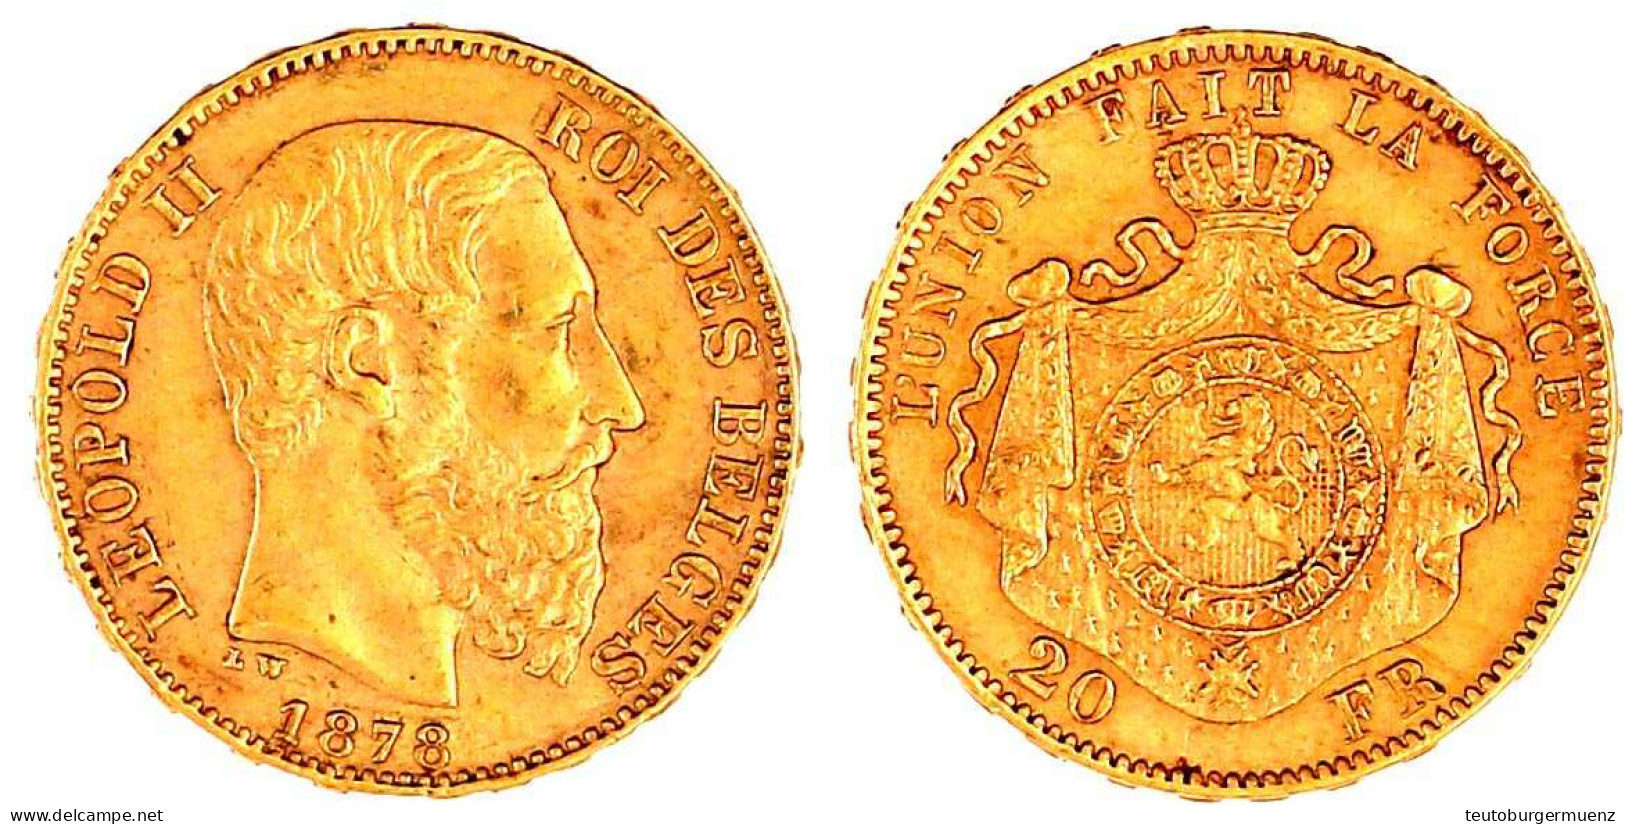 20 Francs 1878. 6,45 G. 900/1000. Vorzüglich. Krause/Mishler 37. - 20 Francs (or)